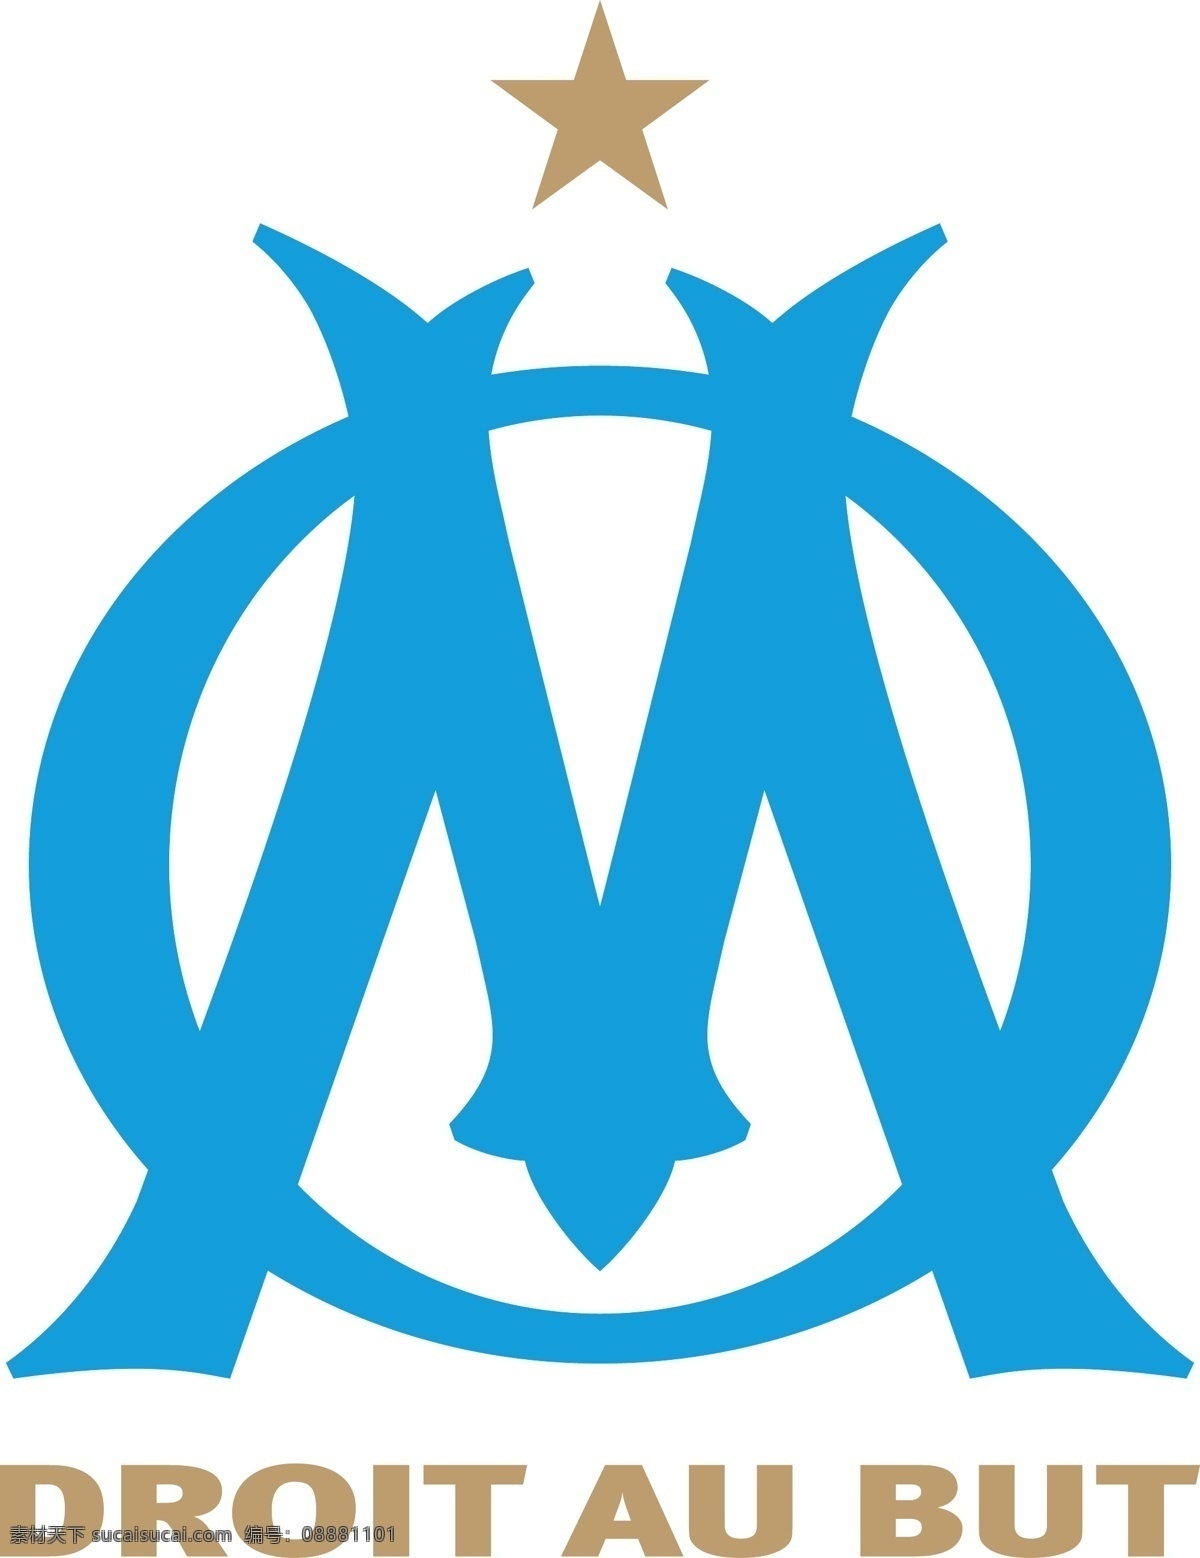 奥林匹克 马赛 足球 俱乐部 徽标 法甲 法国 甲级 联赛 比赛 logo设计